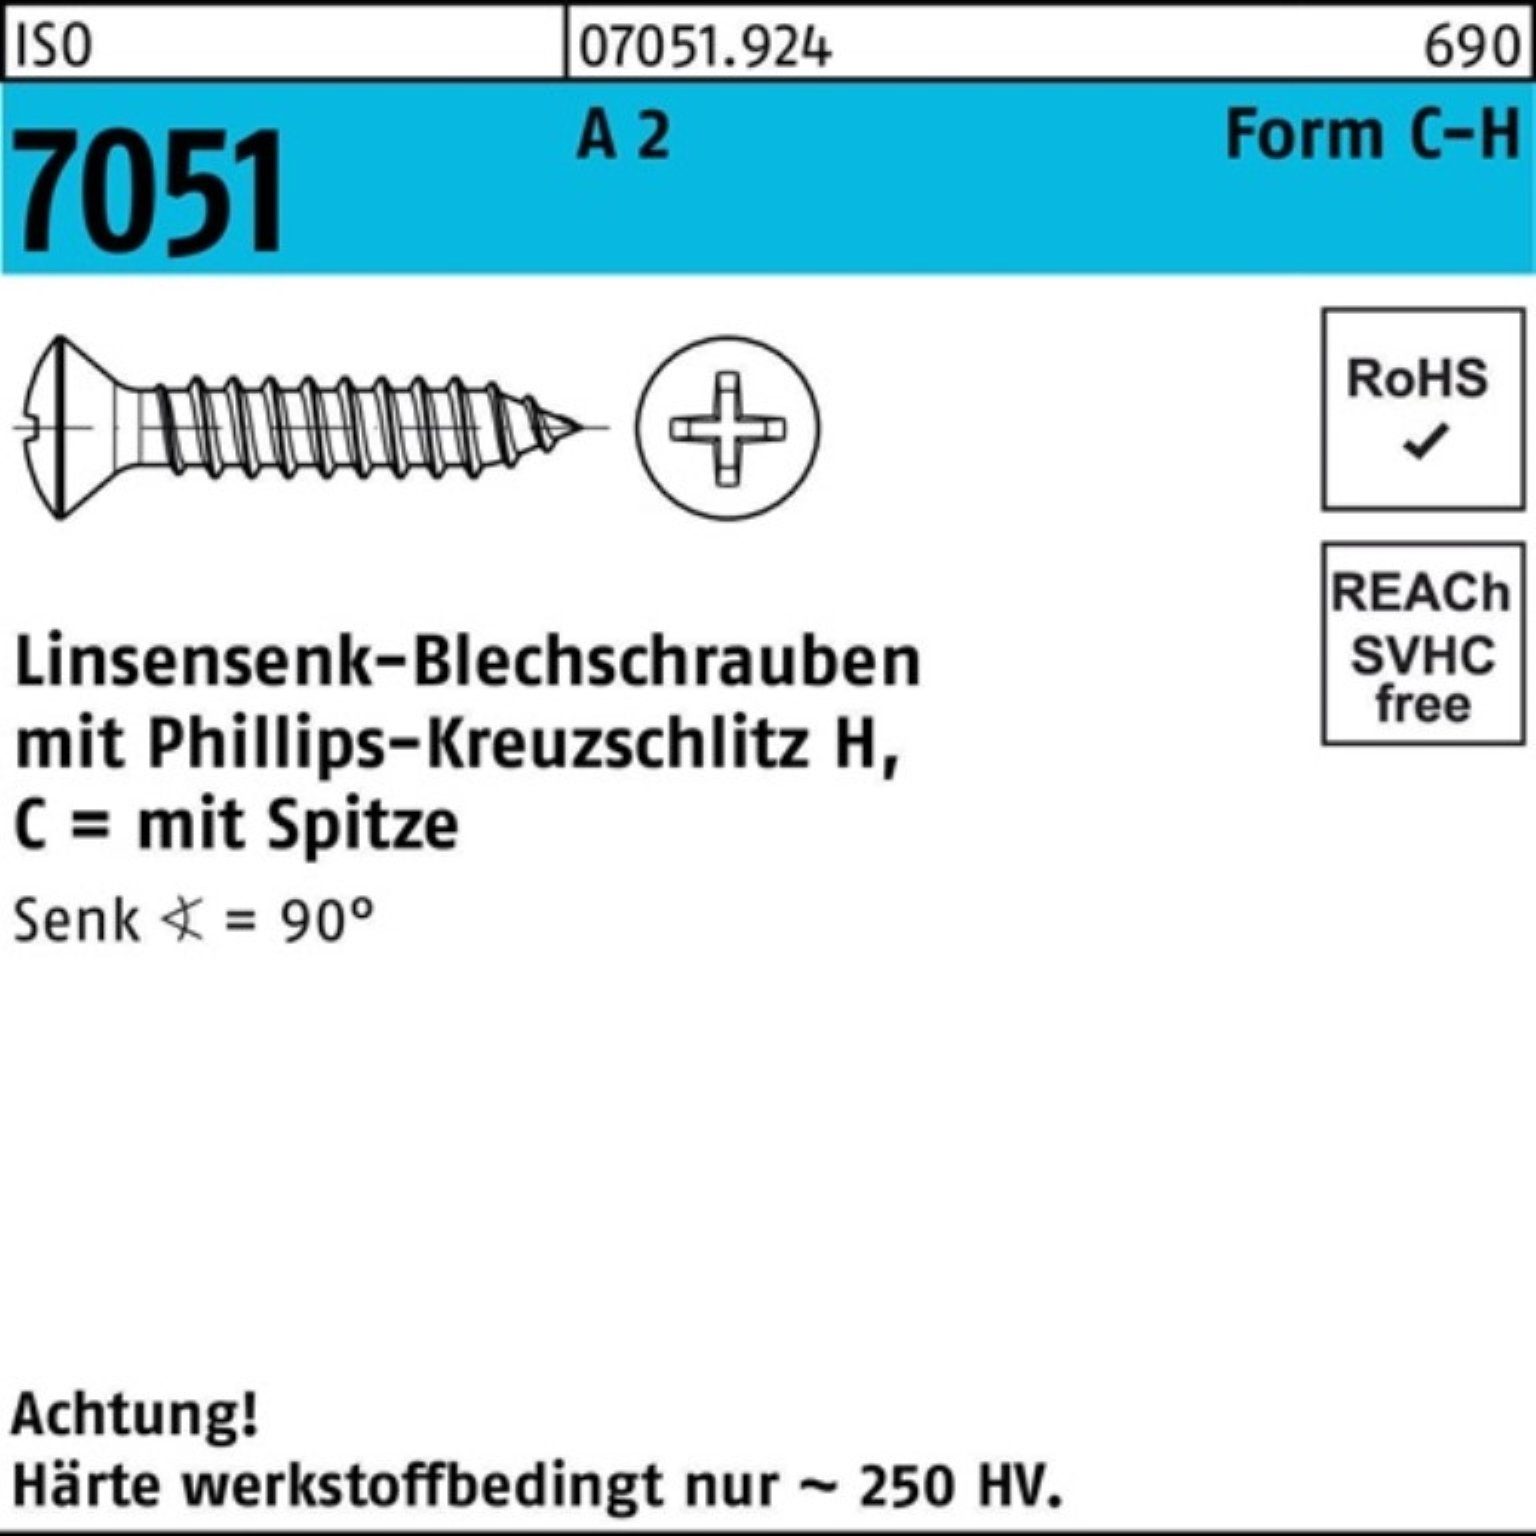 Blechschraube Reyher Blechschraube 4,8x 500er 2 19 Pack 7051 50 ISO LISEKO Spitze/PH -C-H A